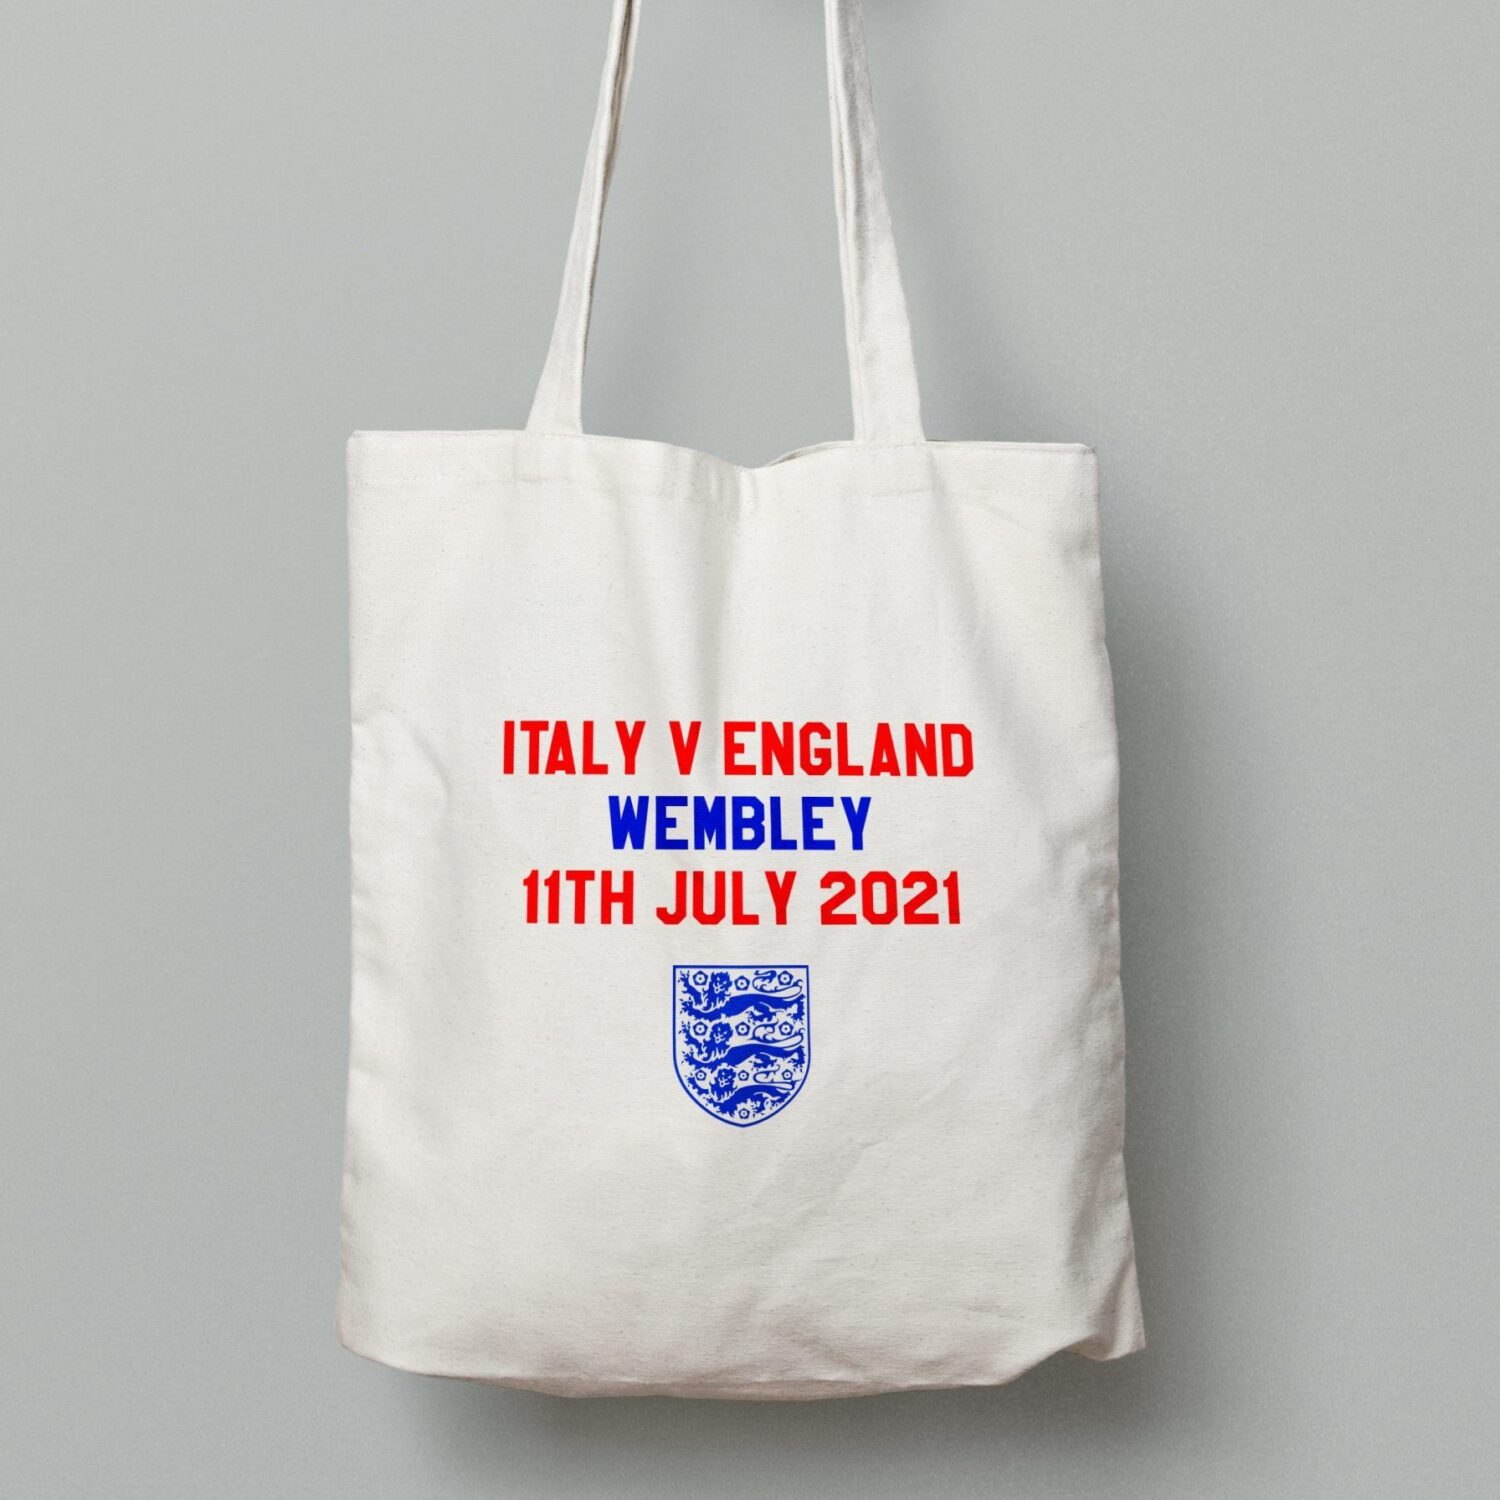 Italy v England tote